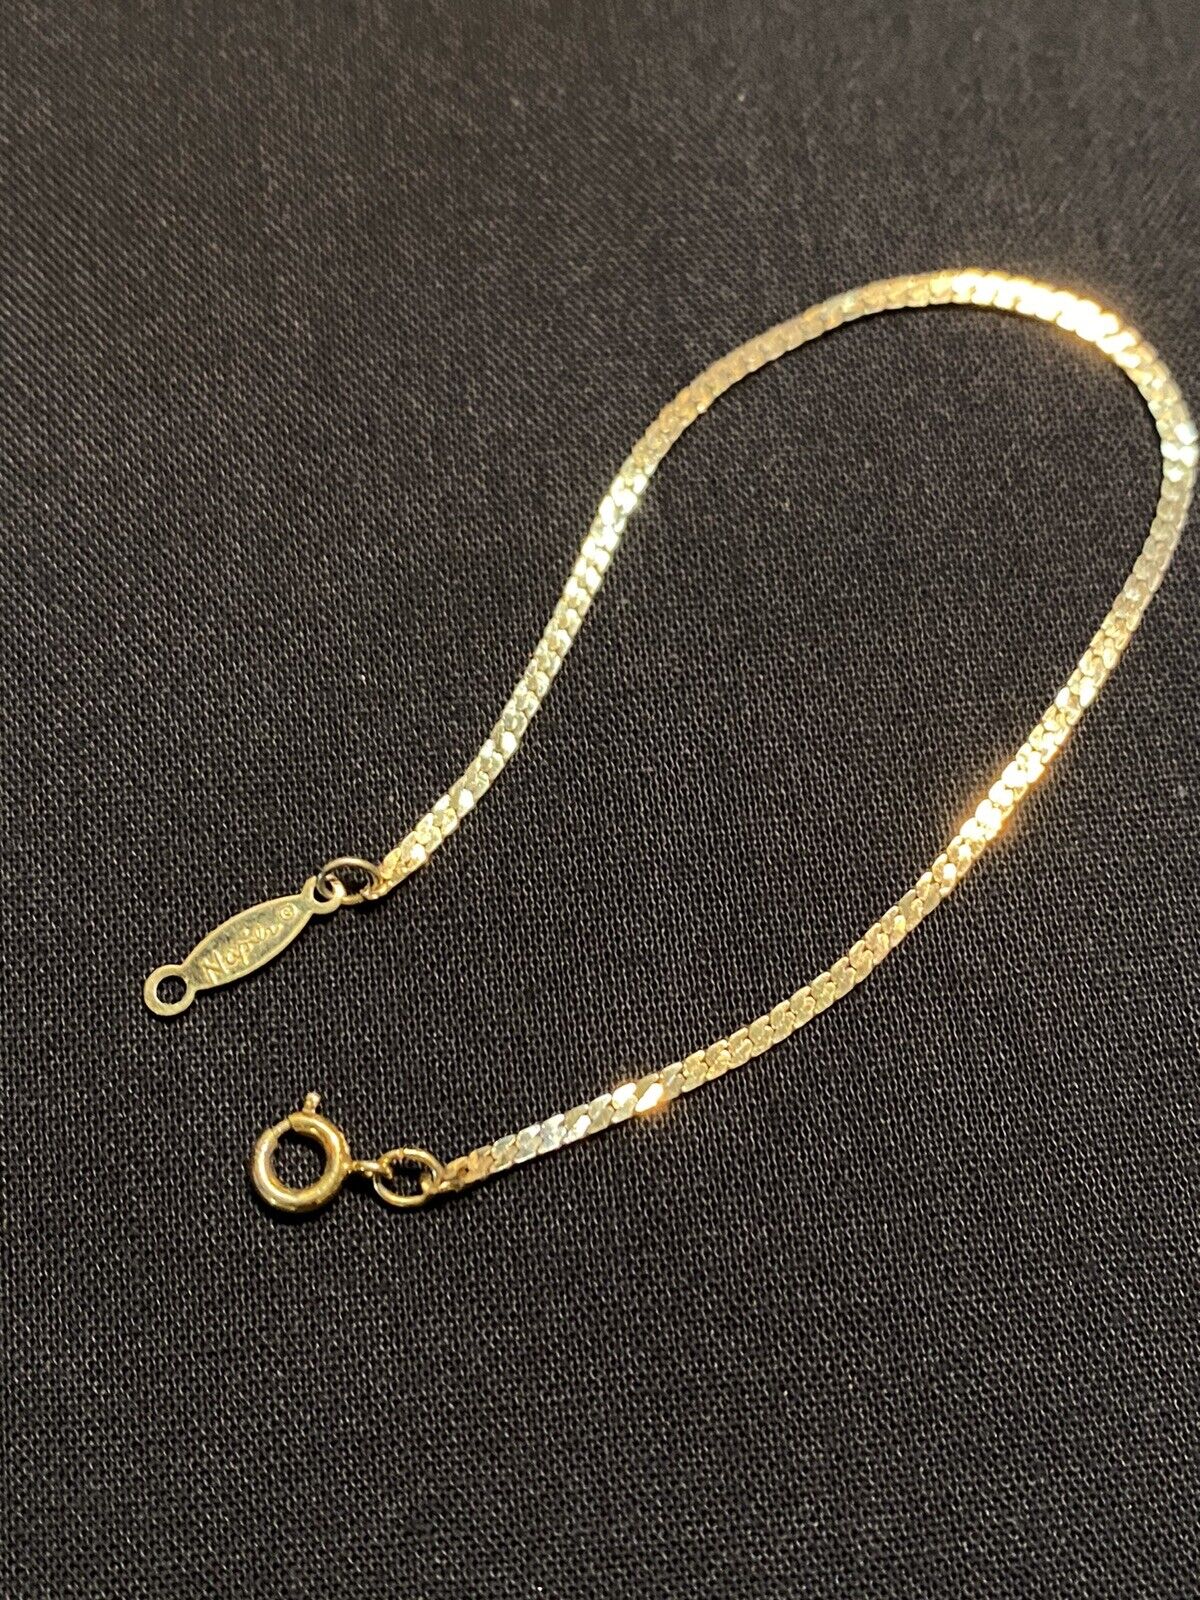 Vintage Napier Signed Gold Filled Bracelet - image 7